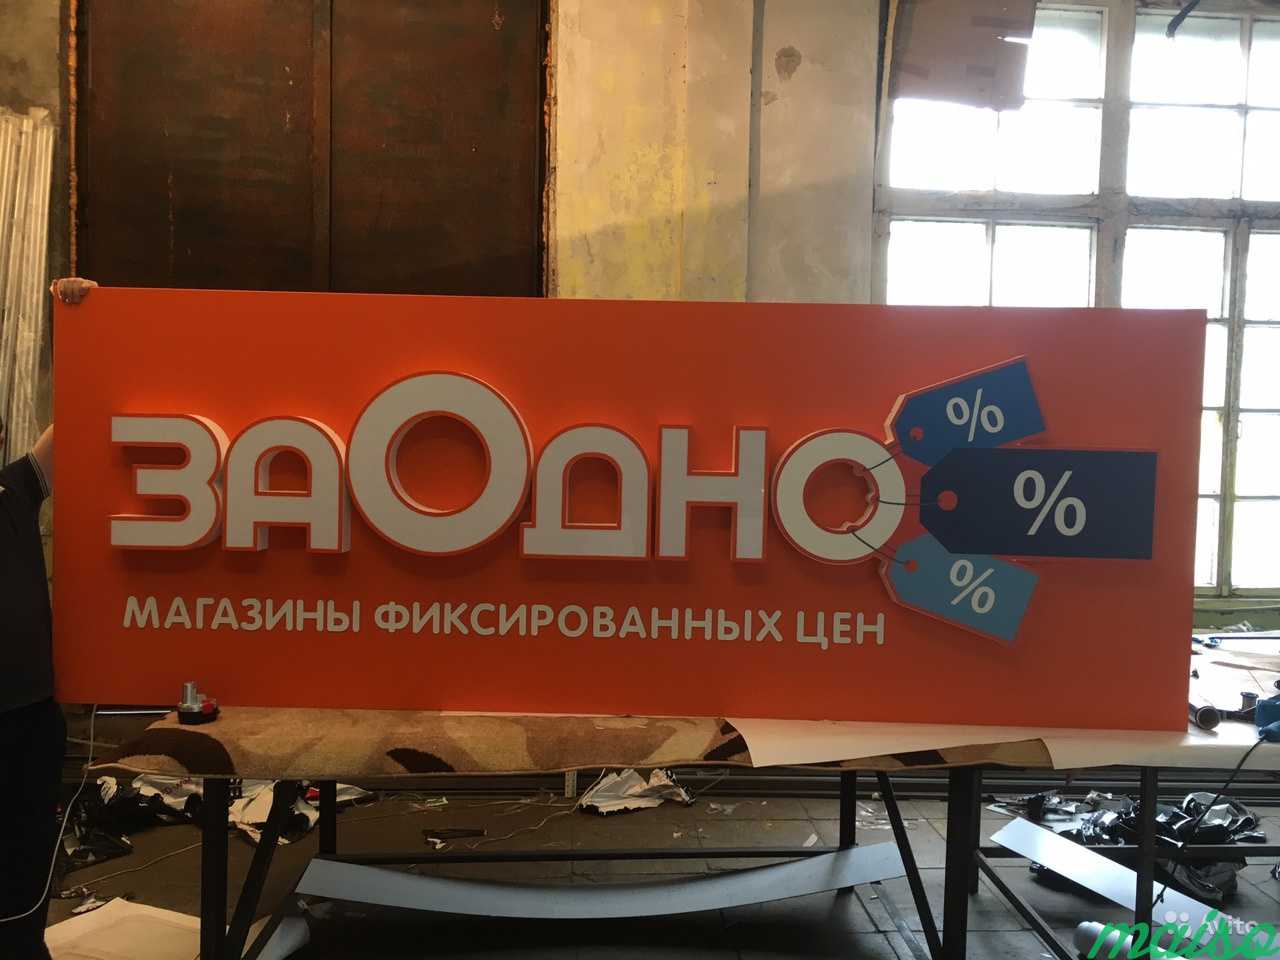 Объемные световые буквы реклама 902 пп в Москве. Фото 3